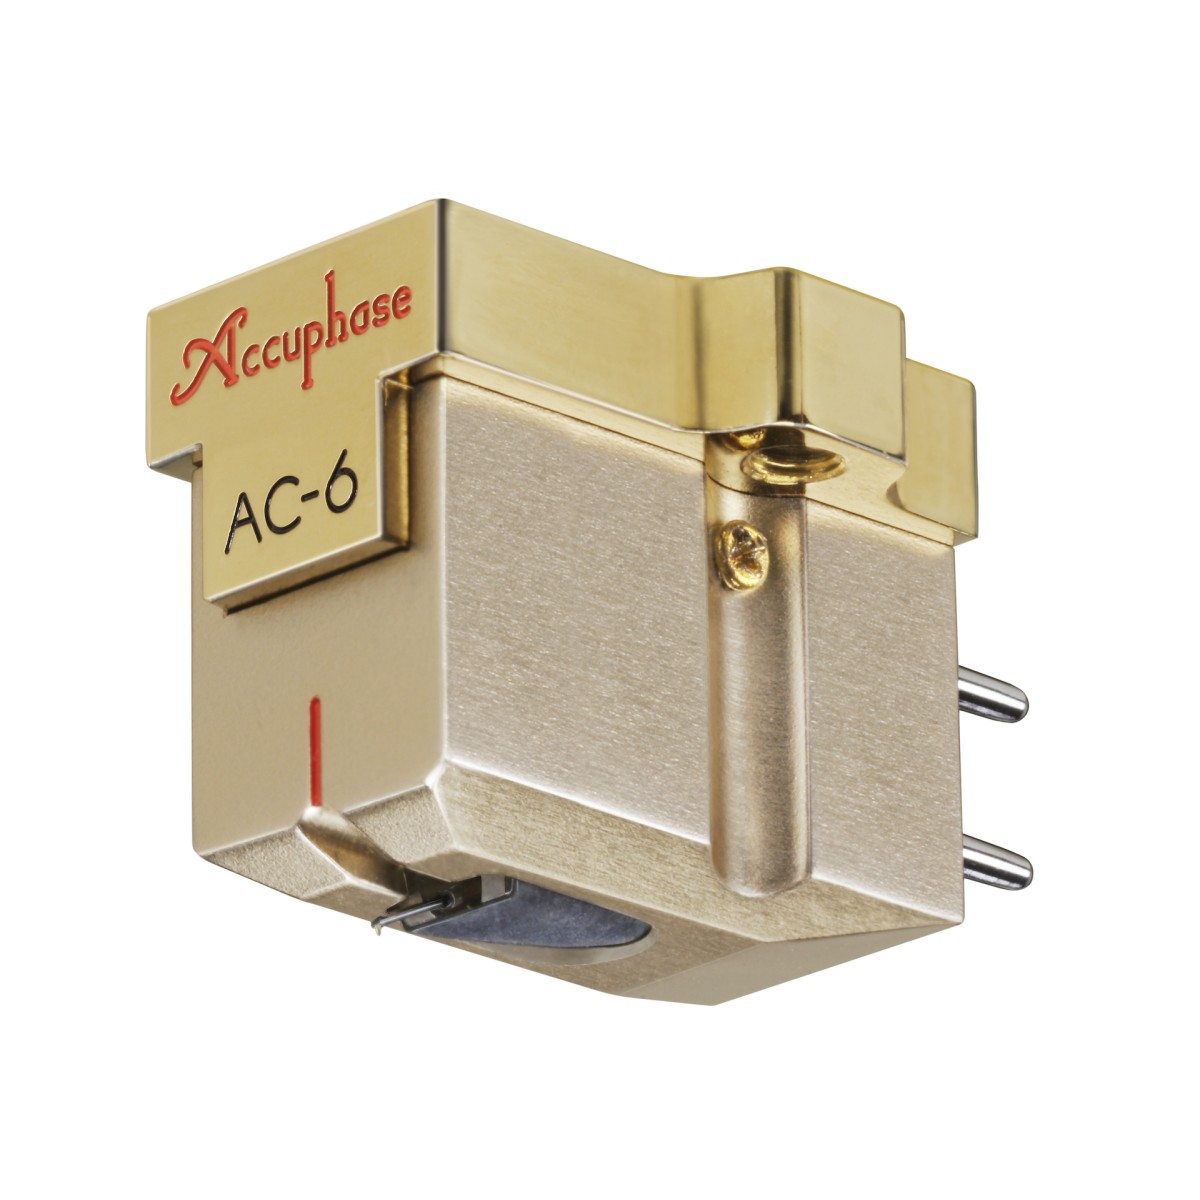 Hier sehen Sie den Artikel AC-6 MC Phono Cartridge aus der Kategorie Accessoires Accuphase. Dieser Artikel ist erhältlich bei cebrands.ch